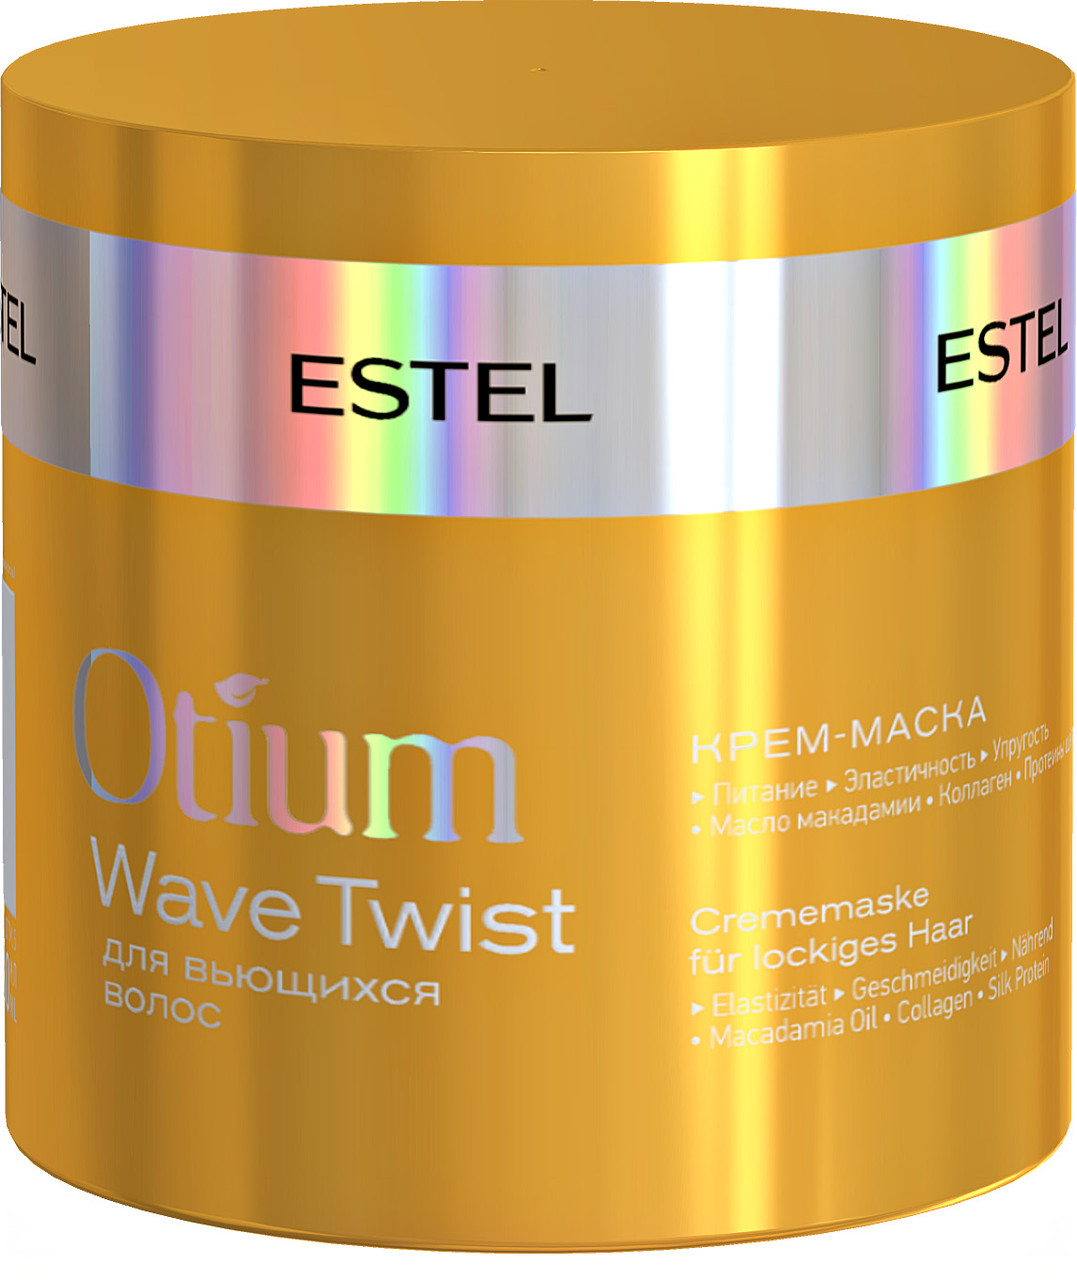 

Крем-маска для вьющихся волос Estel Otium Wave Twist, 300 мл